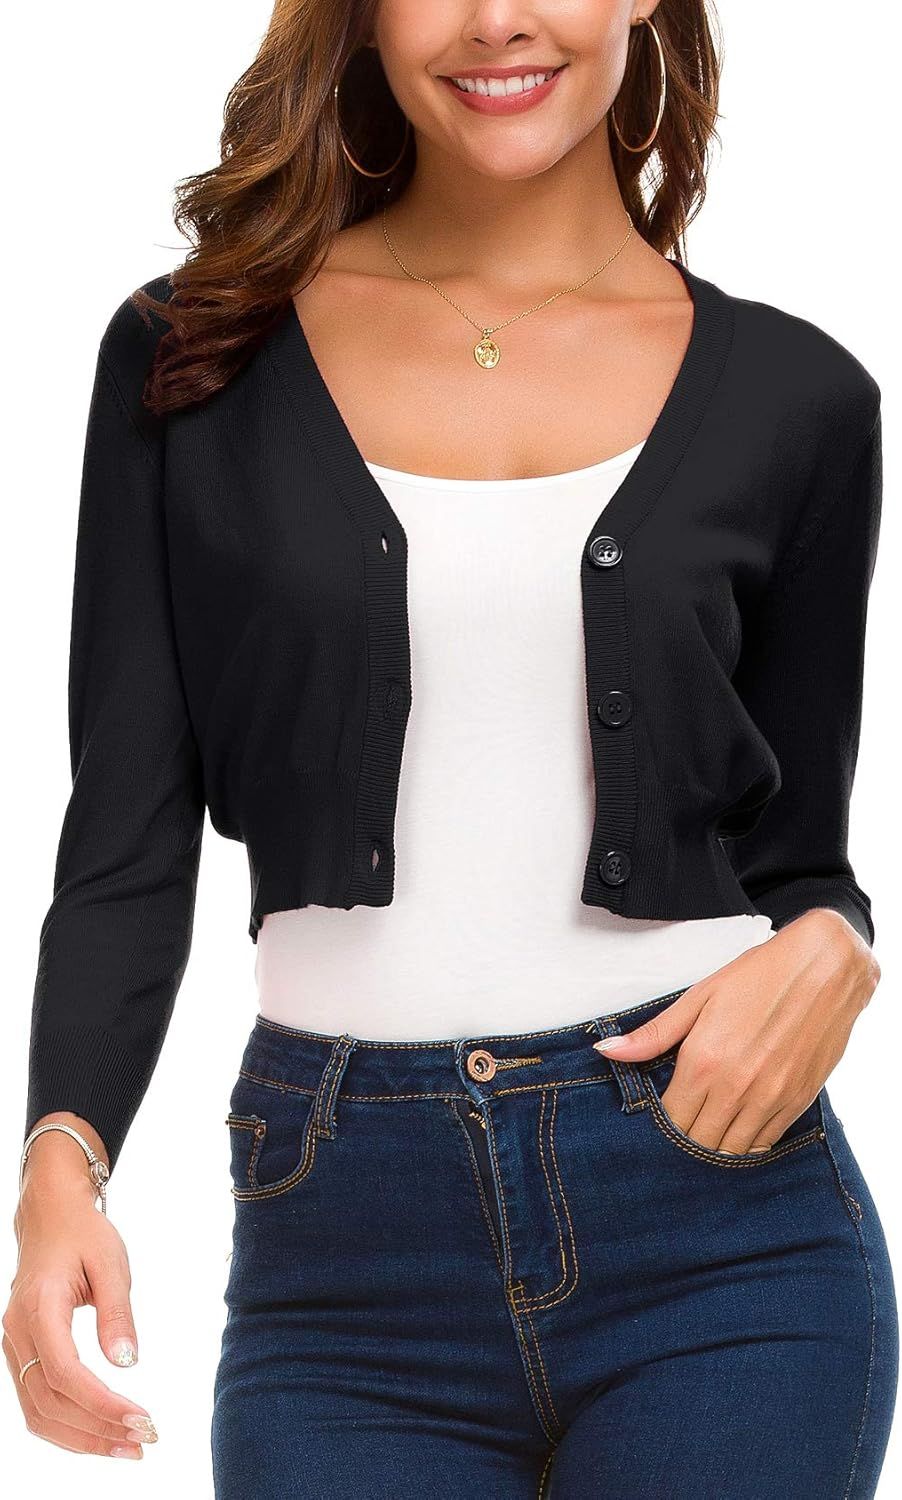 Women's Trendy Bolero Shrug Cropped Cardigan 3/4 Sleeve Open Front Short Cardigans | Amazon (US)